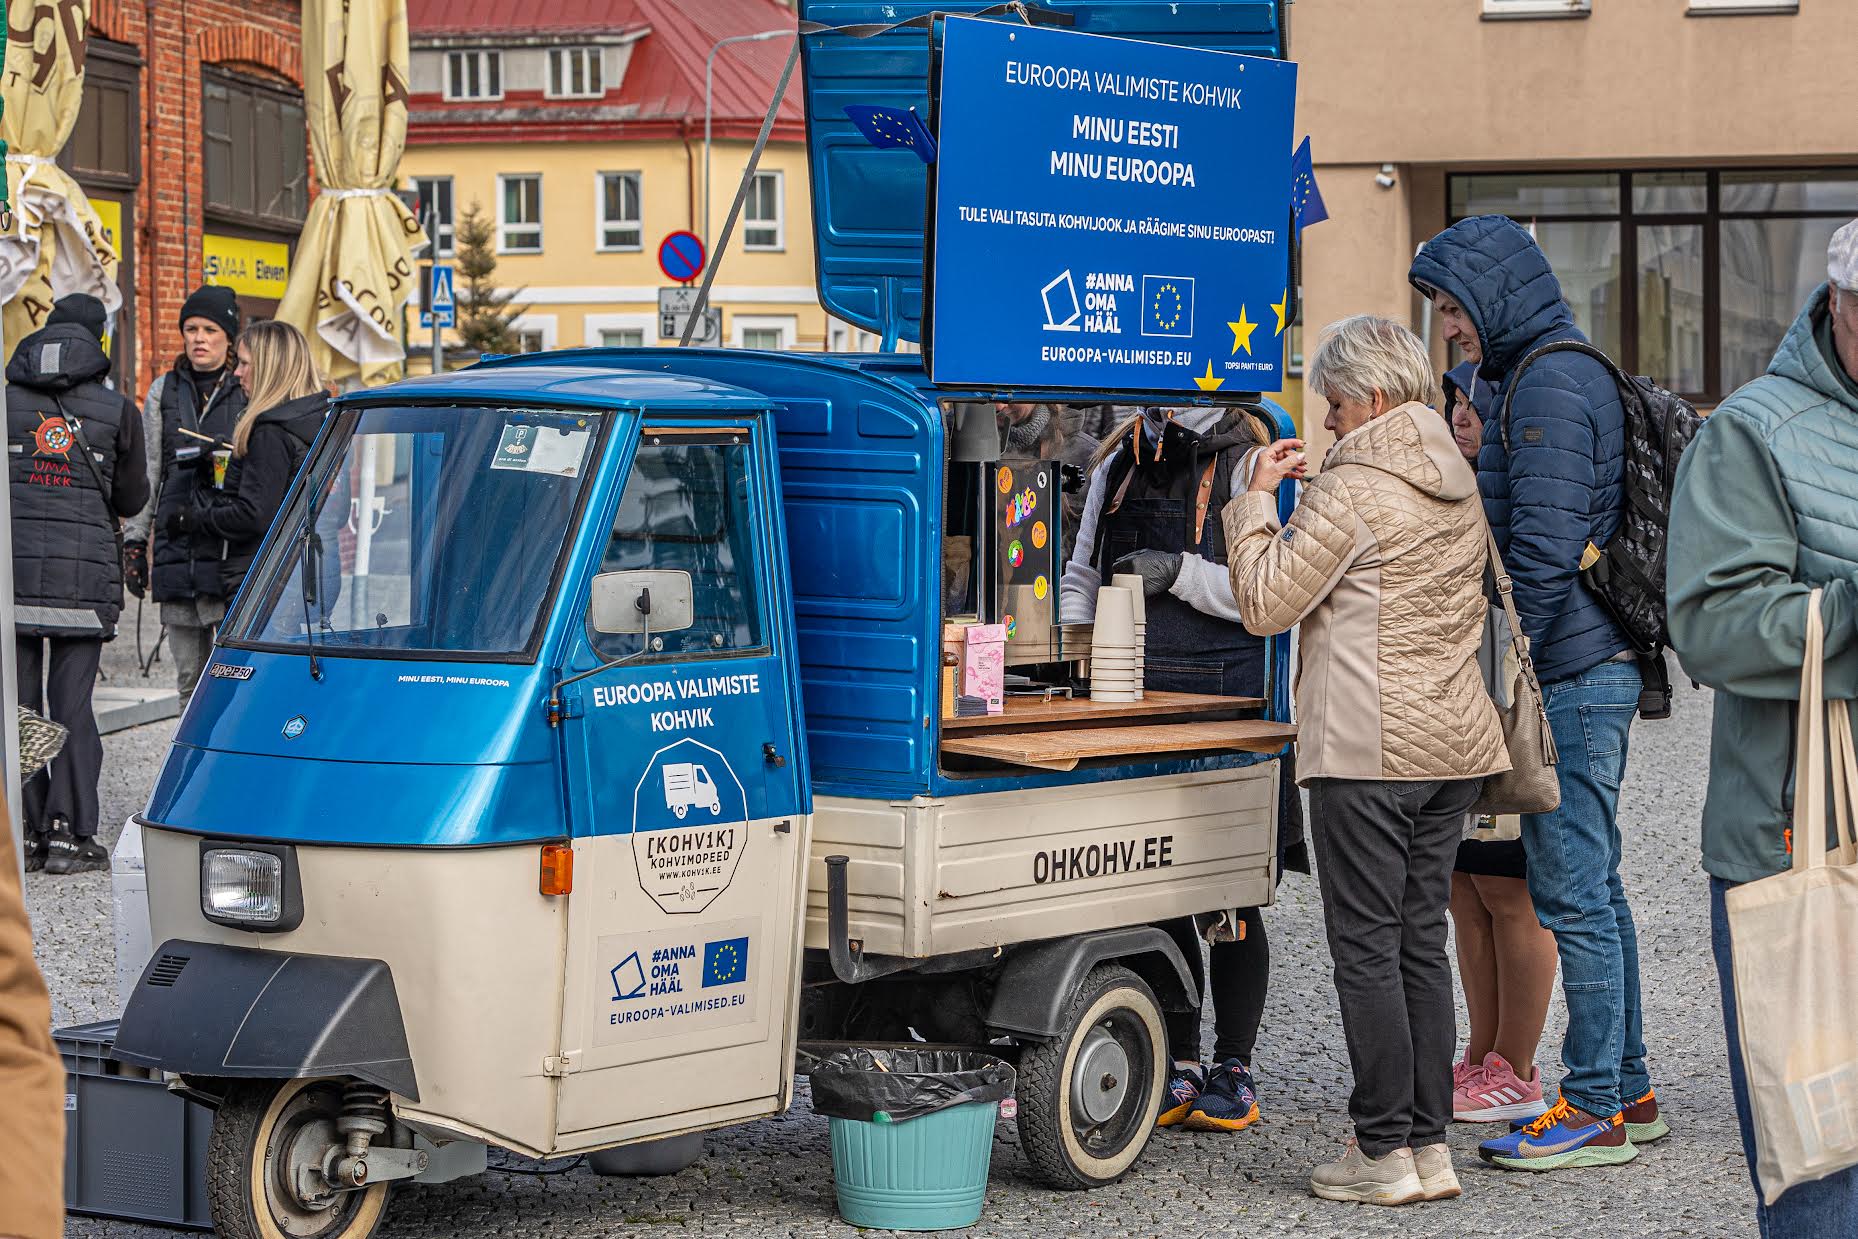 Euroopa valimiste kohvik andis võimaluse tasuta kohvijoogiks ning aruteluks. FOTO: Aigar Nagel